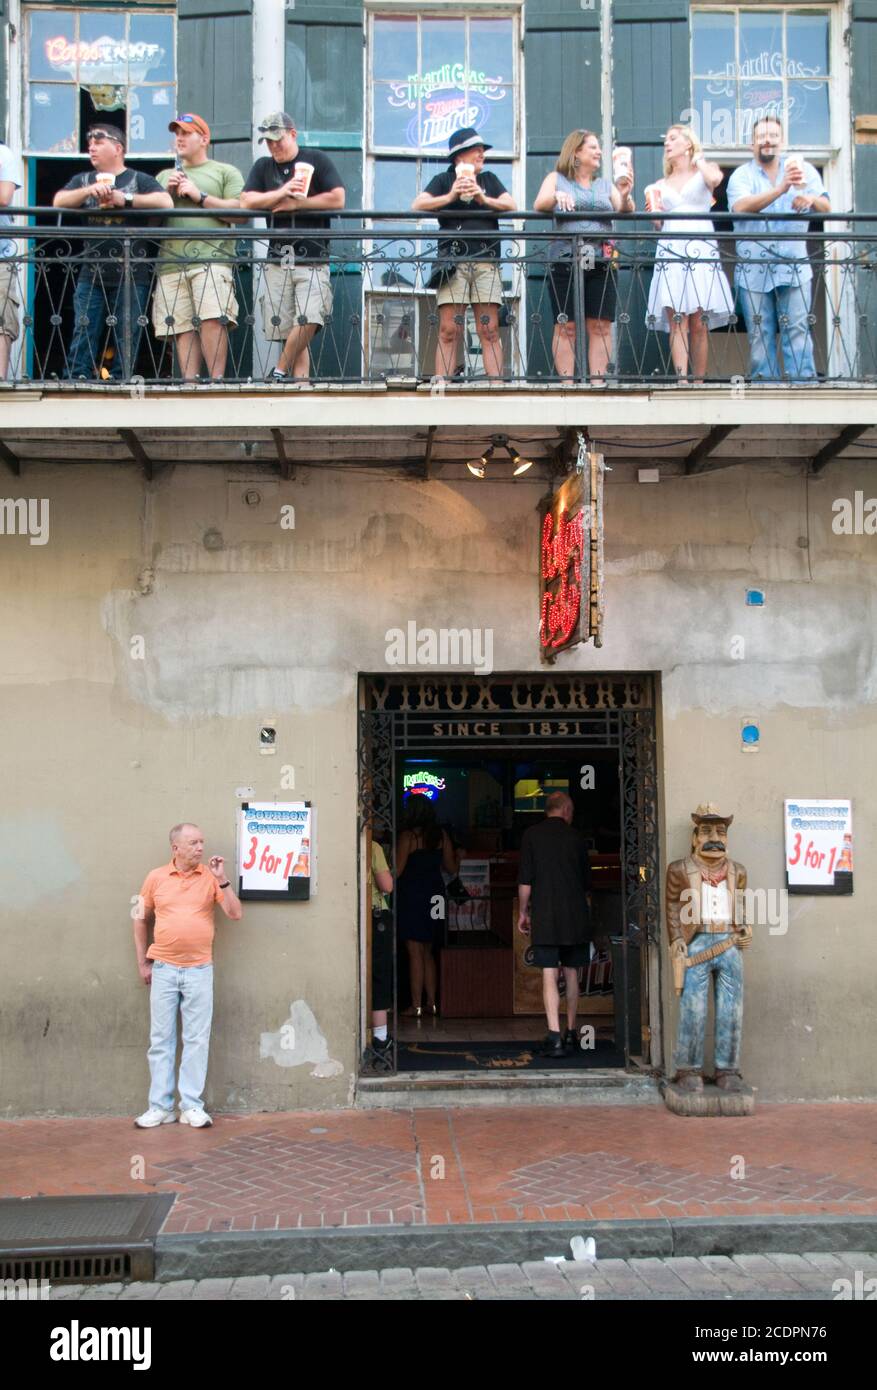 Les clients buvant sur le balcon au-dessus de l'entrée d'un bar dans le quartier français de la Nouvelle-Orléans, Louisiane, États-Unis Banque D'Images